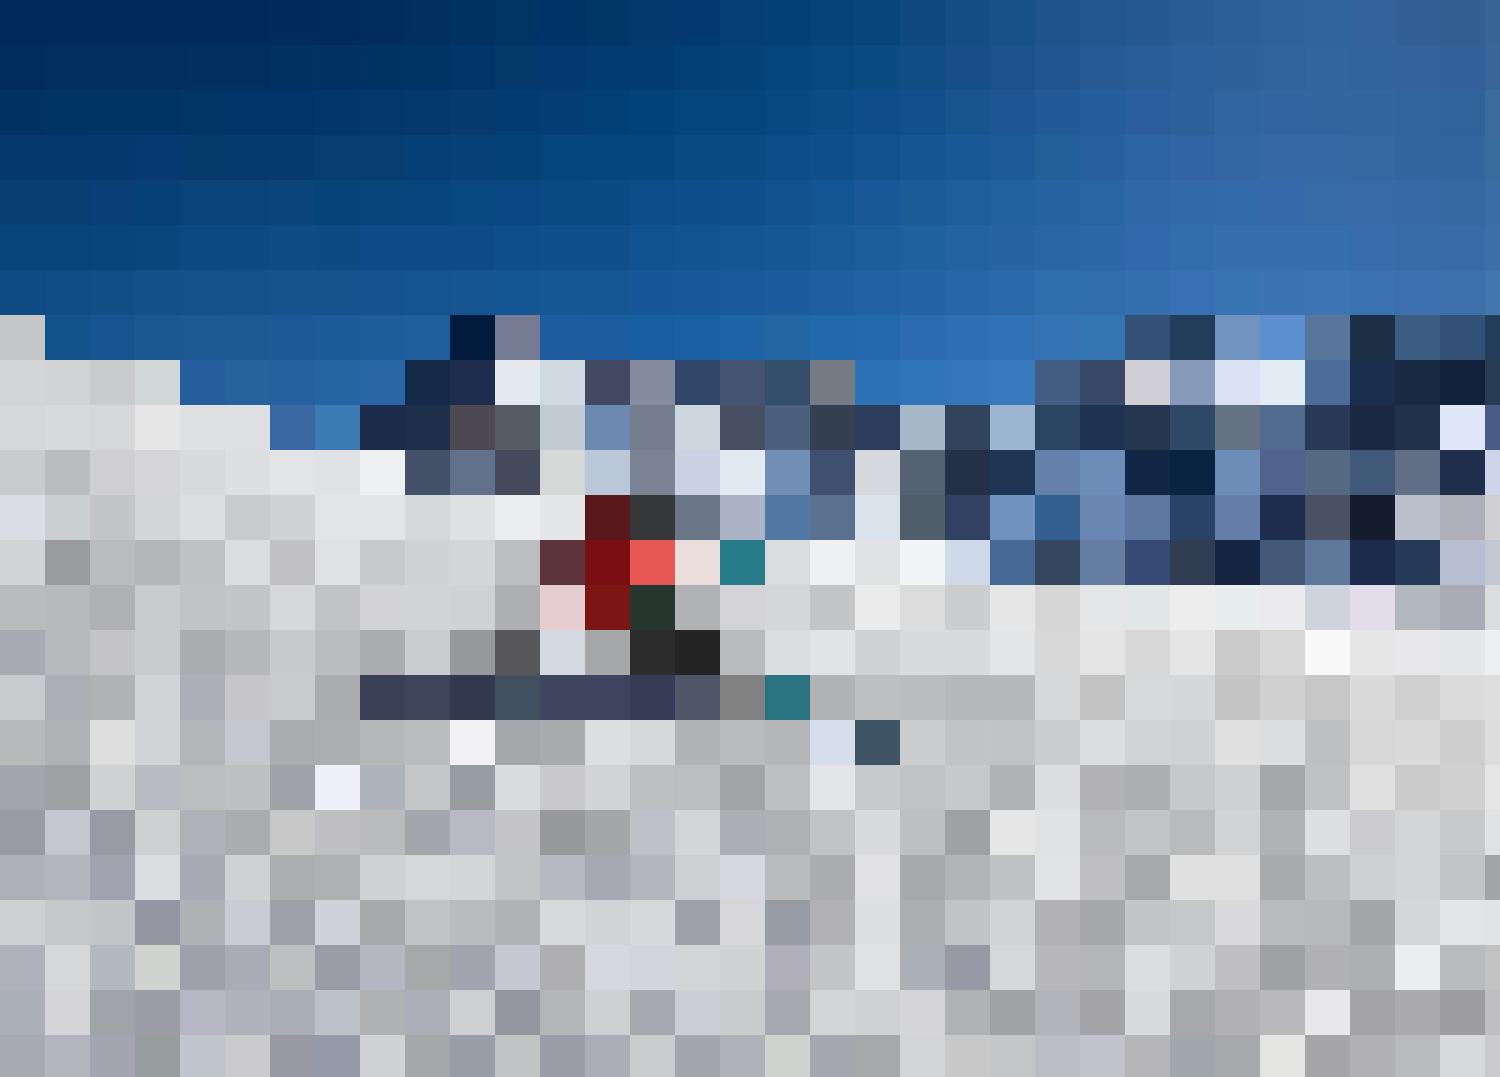 Un coin unique, avec des pistes de ski blanches pour tous les niveaux!